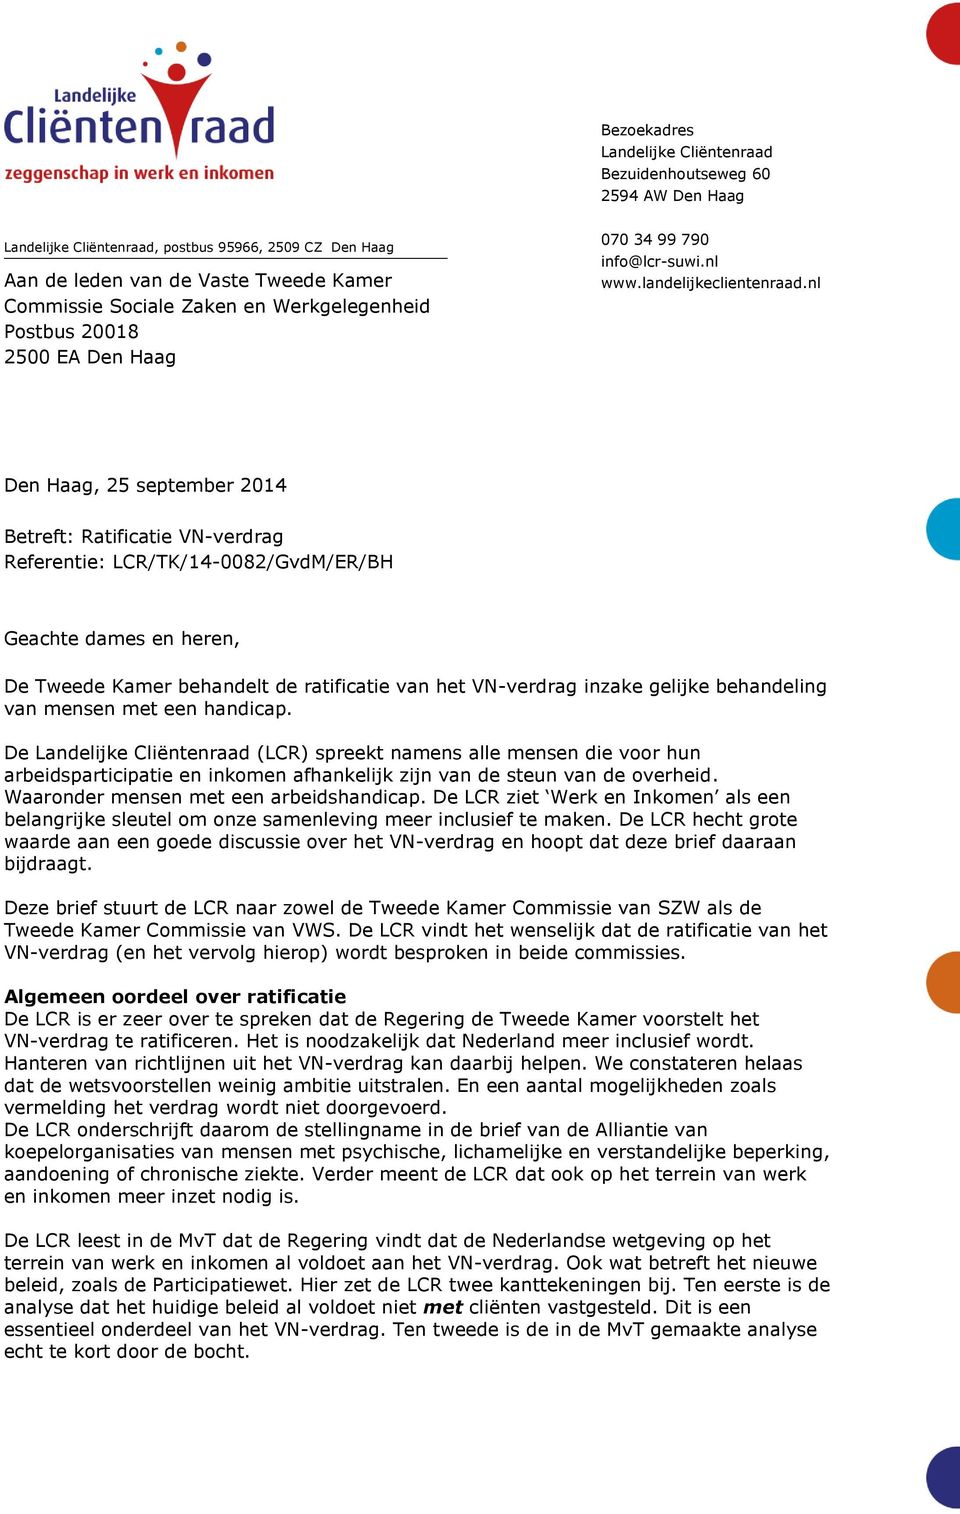 nl Den Haag, 25 september 2014 Betreft: Ratificatie VN-verdrag Referentie: LCR/TK/14-0082/GvdM/ER/BH Geachte dames en heren, De Tweede Kamer behandelt de ratificatie van het VN-verdrag inzake gelijke